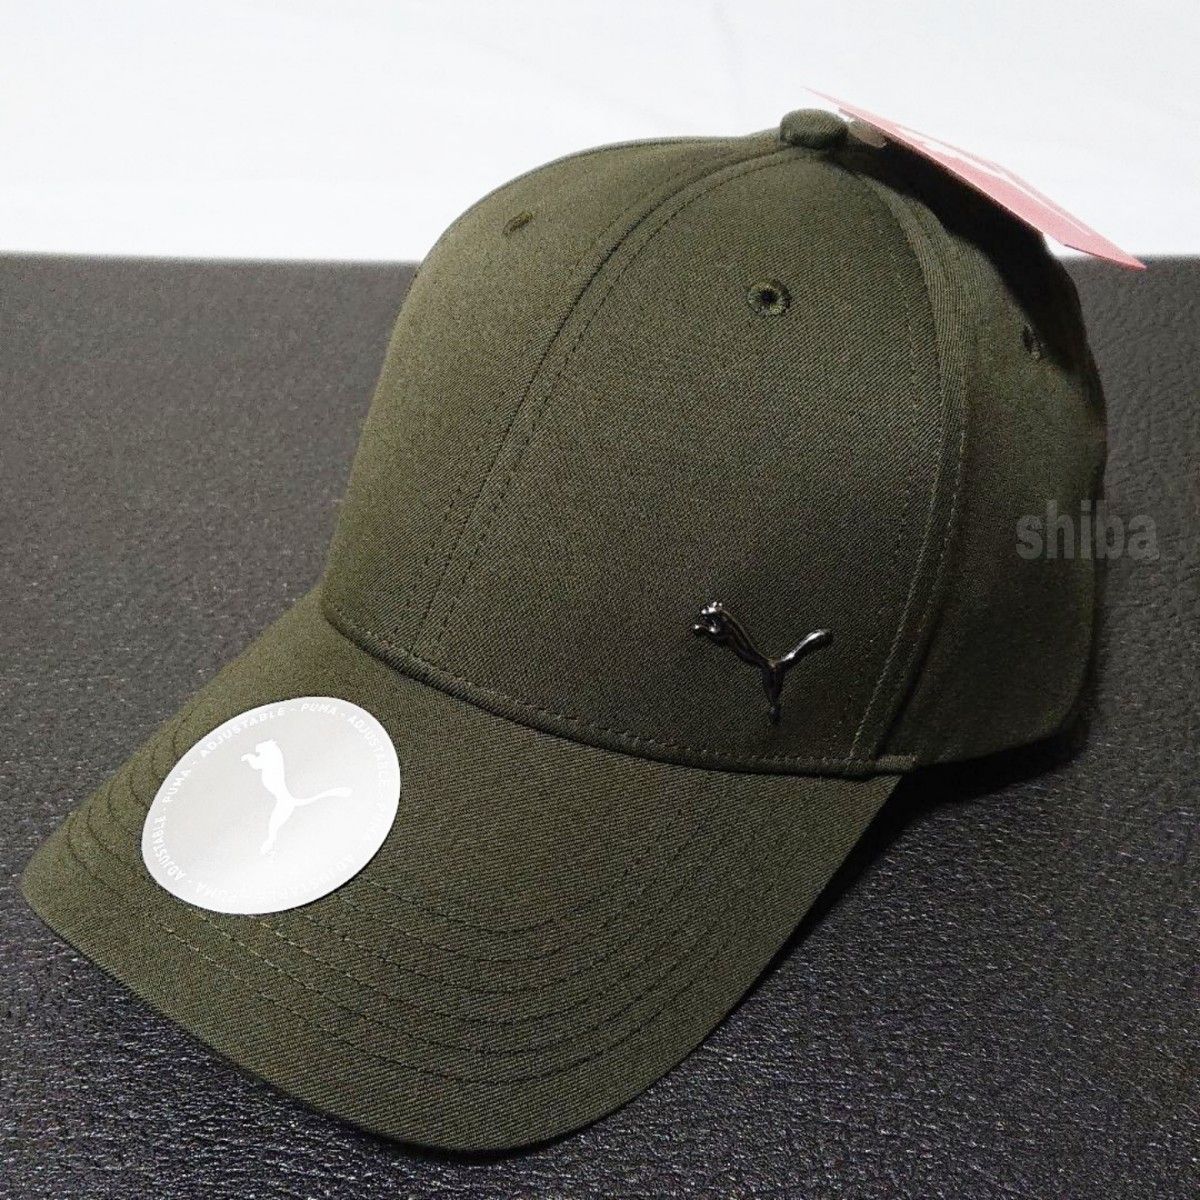 PUMA プーマ 正規品 キャップ 帽子 キャップ カーキ 緑 海外モデル メタル キャット ユニセックス フリーサイズ